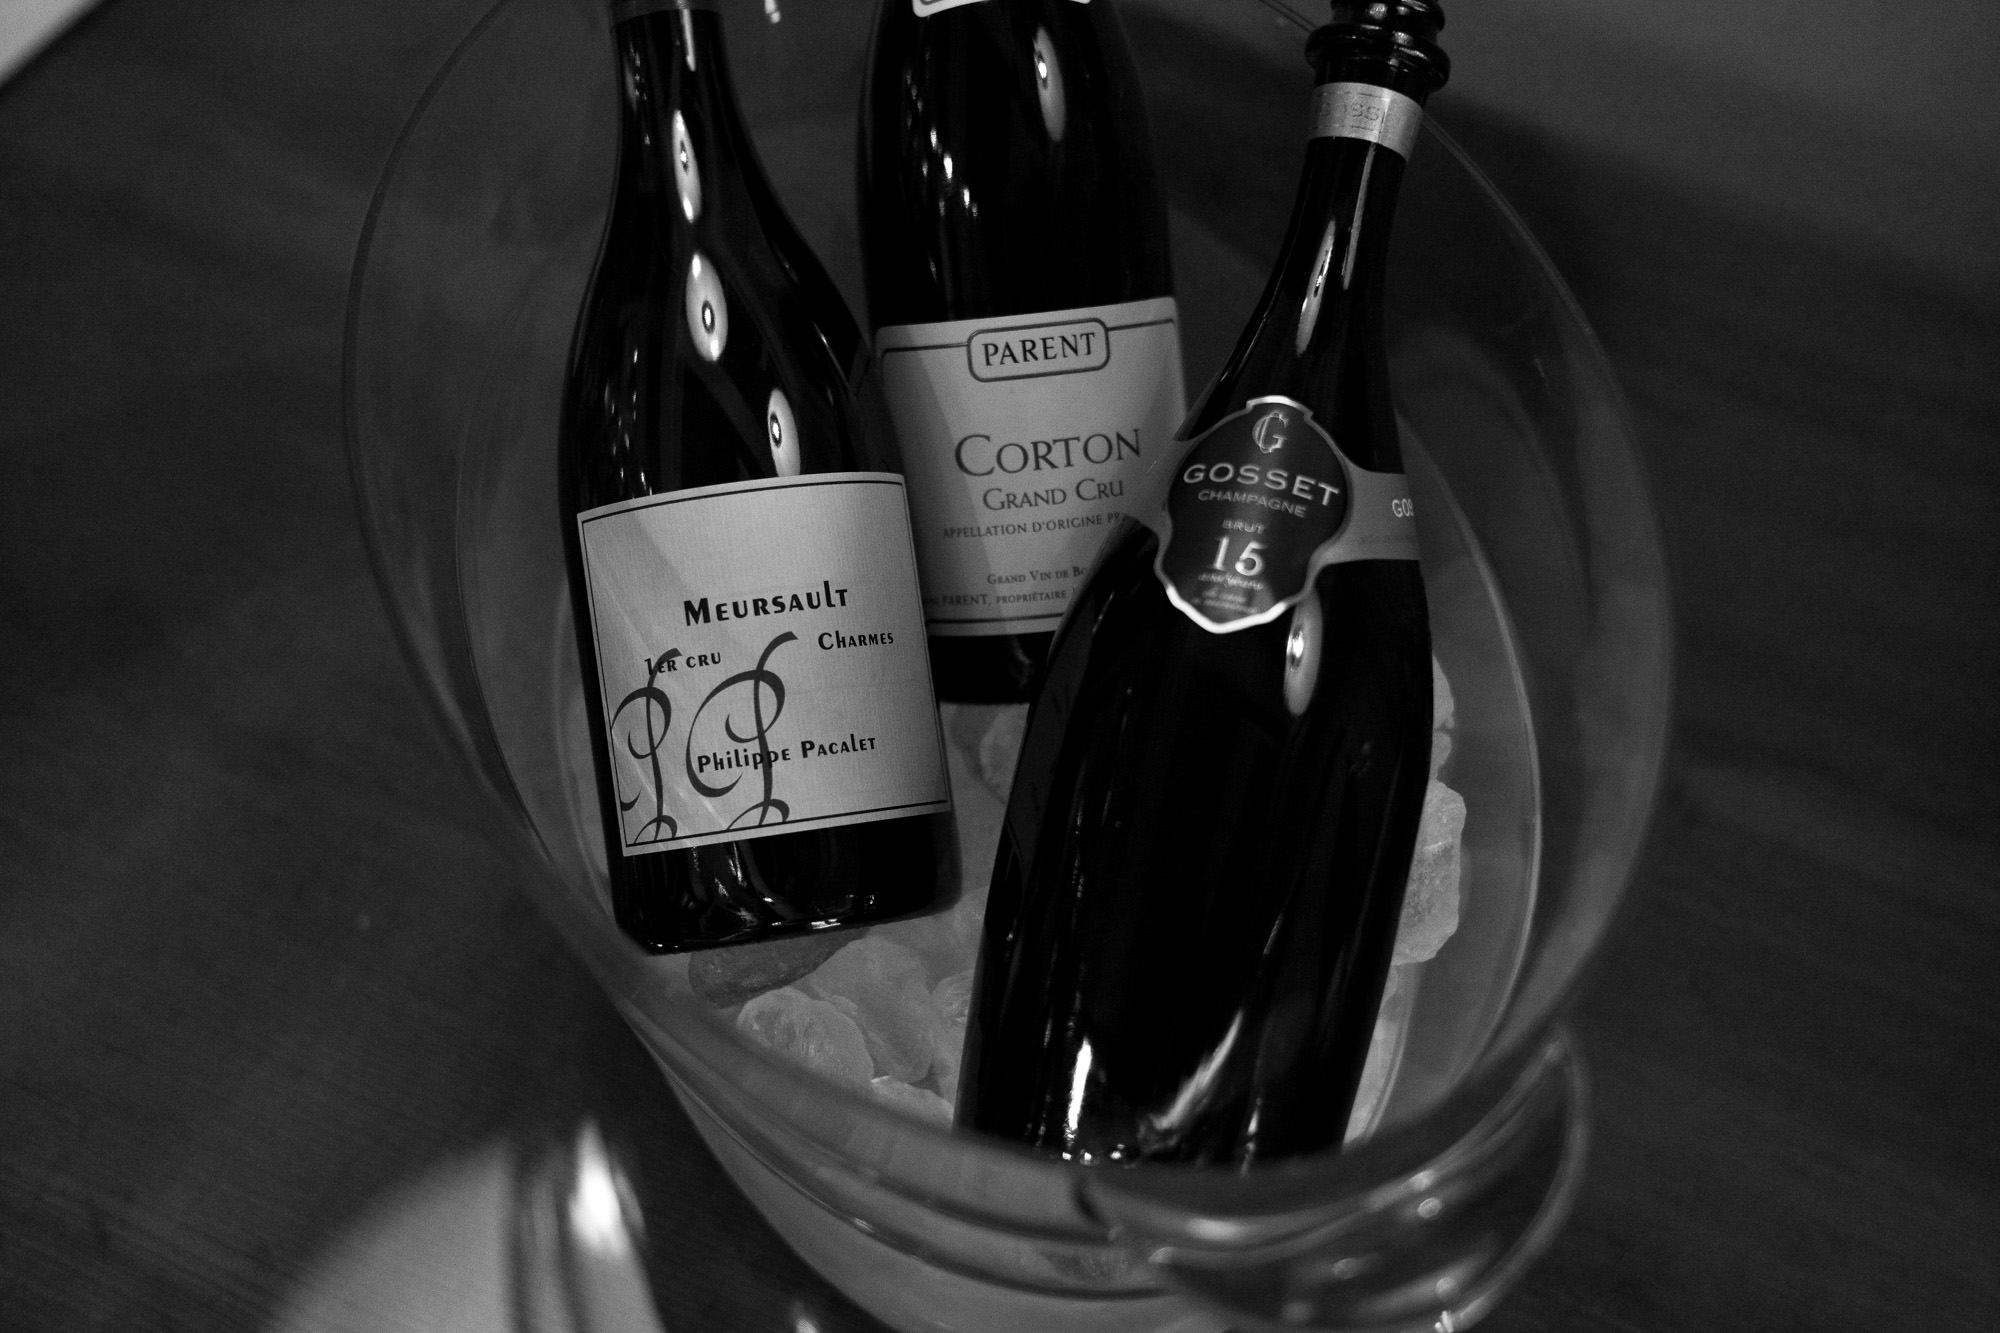 Philippe PACALET MEURSAULT 1ER CRU CHARMES 19 // DOMAINE PARENT Corton Blanc Grand Cru 16 // GOSSET 15 ans de Cave a Minima Brut NV フィリップバカレー ムルソー プルミエクリュ シャルム19 自然派の造り手を代表する希少なパカレの白ワイン。透明感とスムースな伸びのある味わいは感動もの。赤ワインが有名な造り手ですが、実は白ワインも超絶秀逸。繊細な味わいが分かる日本人にこそ頂きたい作品。 ドメーヌパラン コルトンブラン グランクリュ 16 希少なコルトンの畑を所有するパランのグランクリュ。希少なバックヴィンテージです。偉大な味わい。感動もの。ポマールが有名ですが、唯一所有するコルトンはなかなか出会えません。至福も味わい。 ゴッセ キャンザーン ド カーヴ ア ミニア ブリュット NV 90年代の最良年3ヴィンテージをアッサンブラージュして1999年にティラージュ その後15年間瓶内熟成させた銘門ゴッセのスペシャルキュヴェ。ノンマロラテックならではの長期熟成ながらフラッシュさと重厚感の味わいはゴッセならでは。